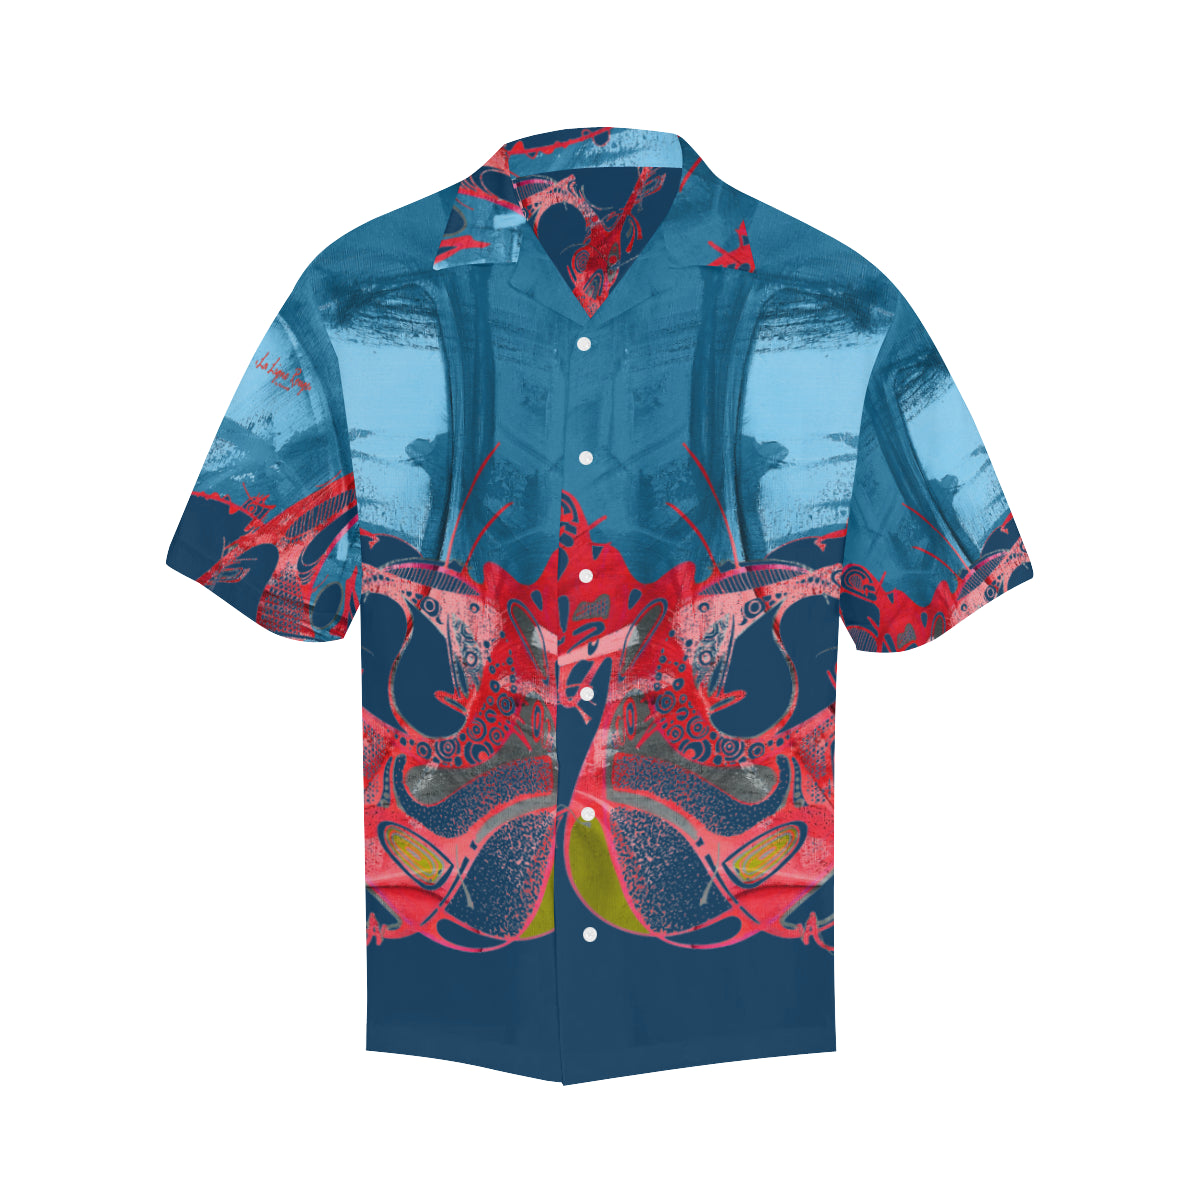 夏威夷衬衫“Sursoijean”